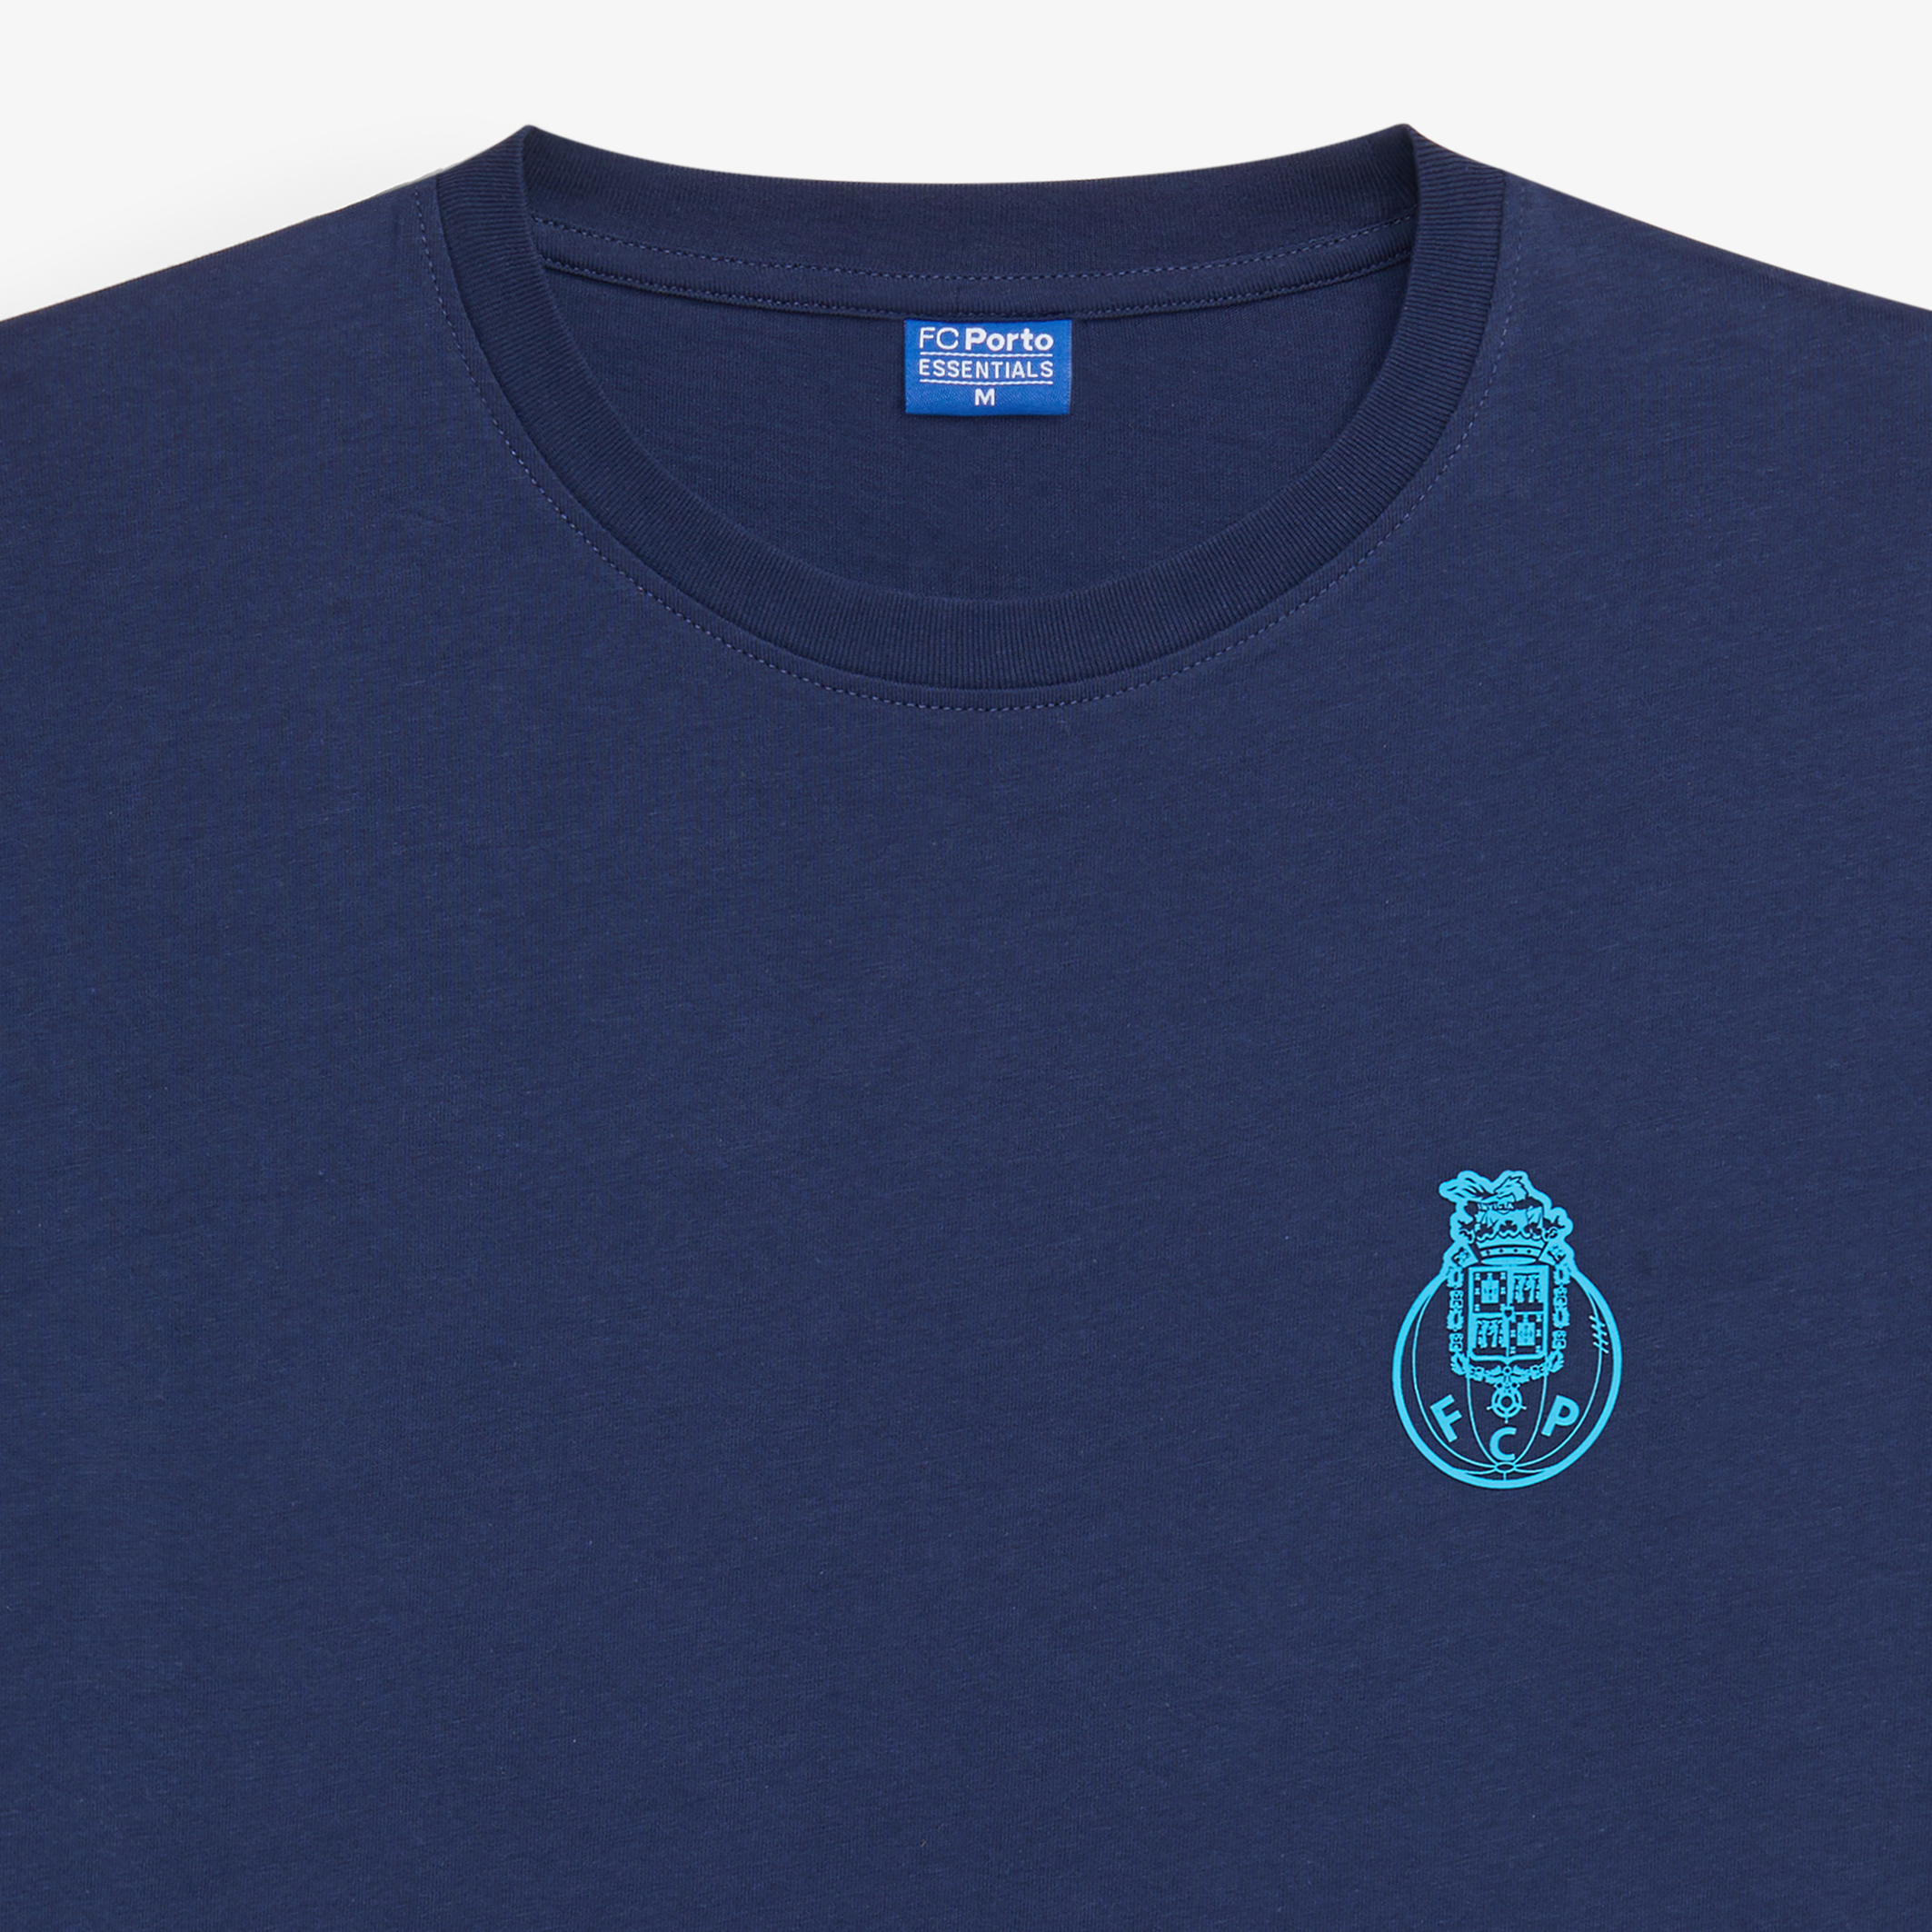 Camiseta Fc Porto Azul Essentials